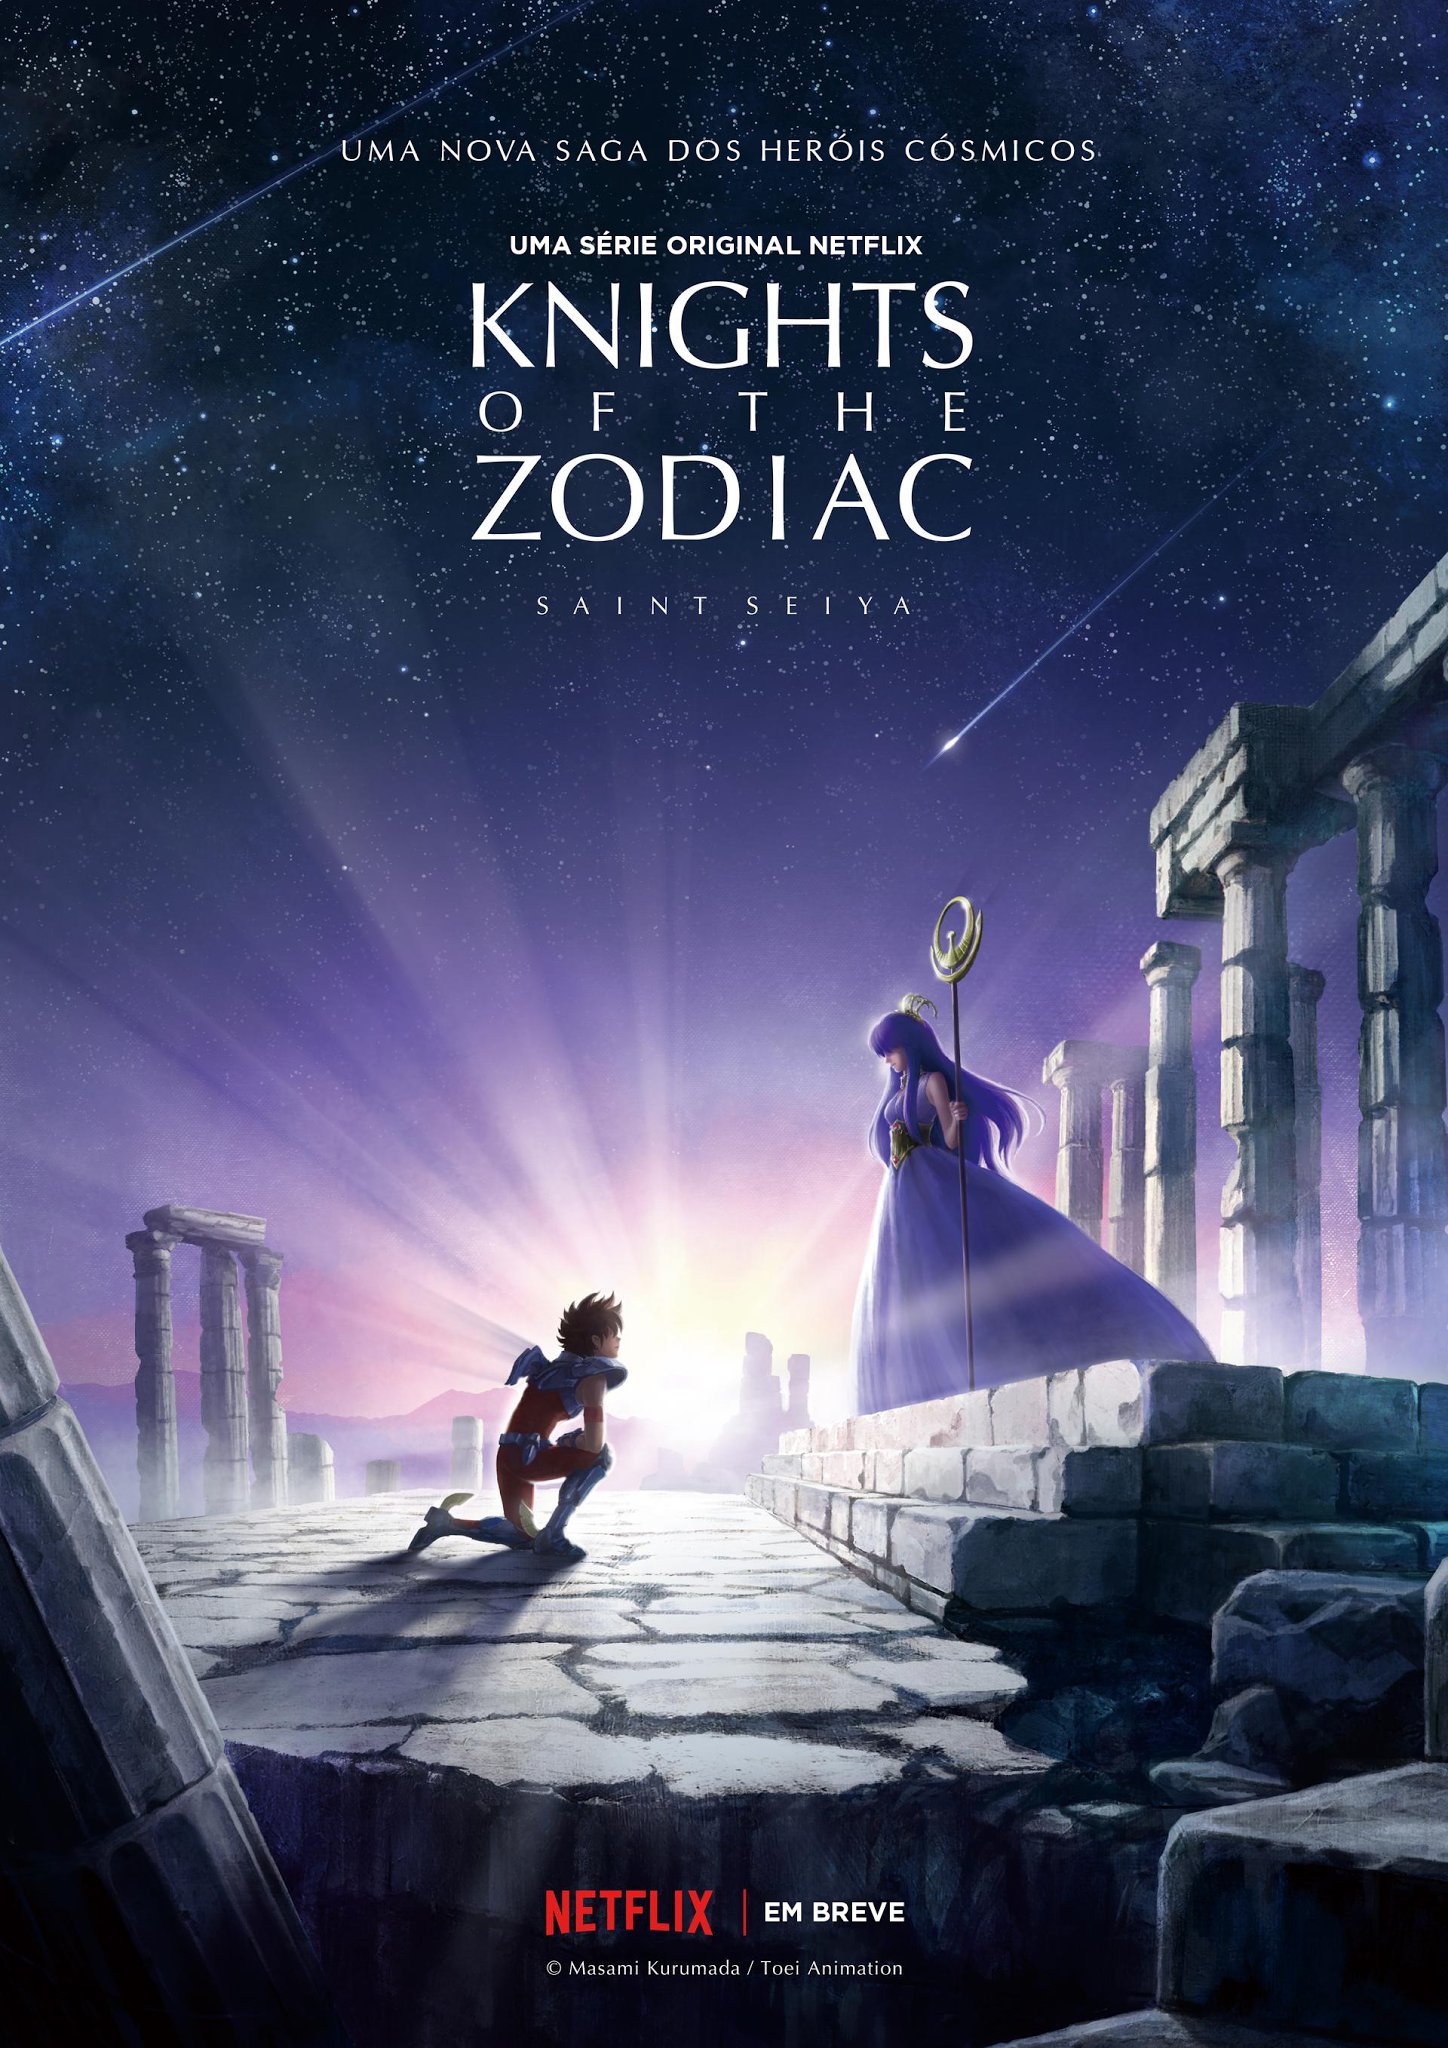 Netflix anuncia que Os Cavaleiros do Zodíaco ganhará uma série animada!